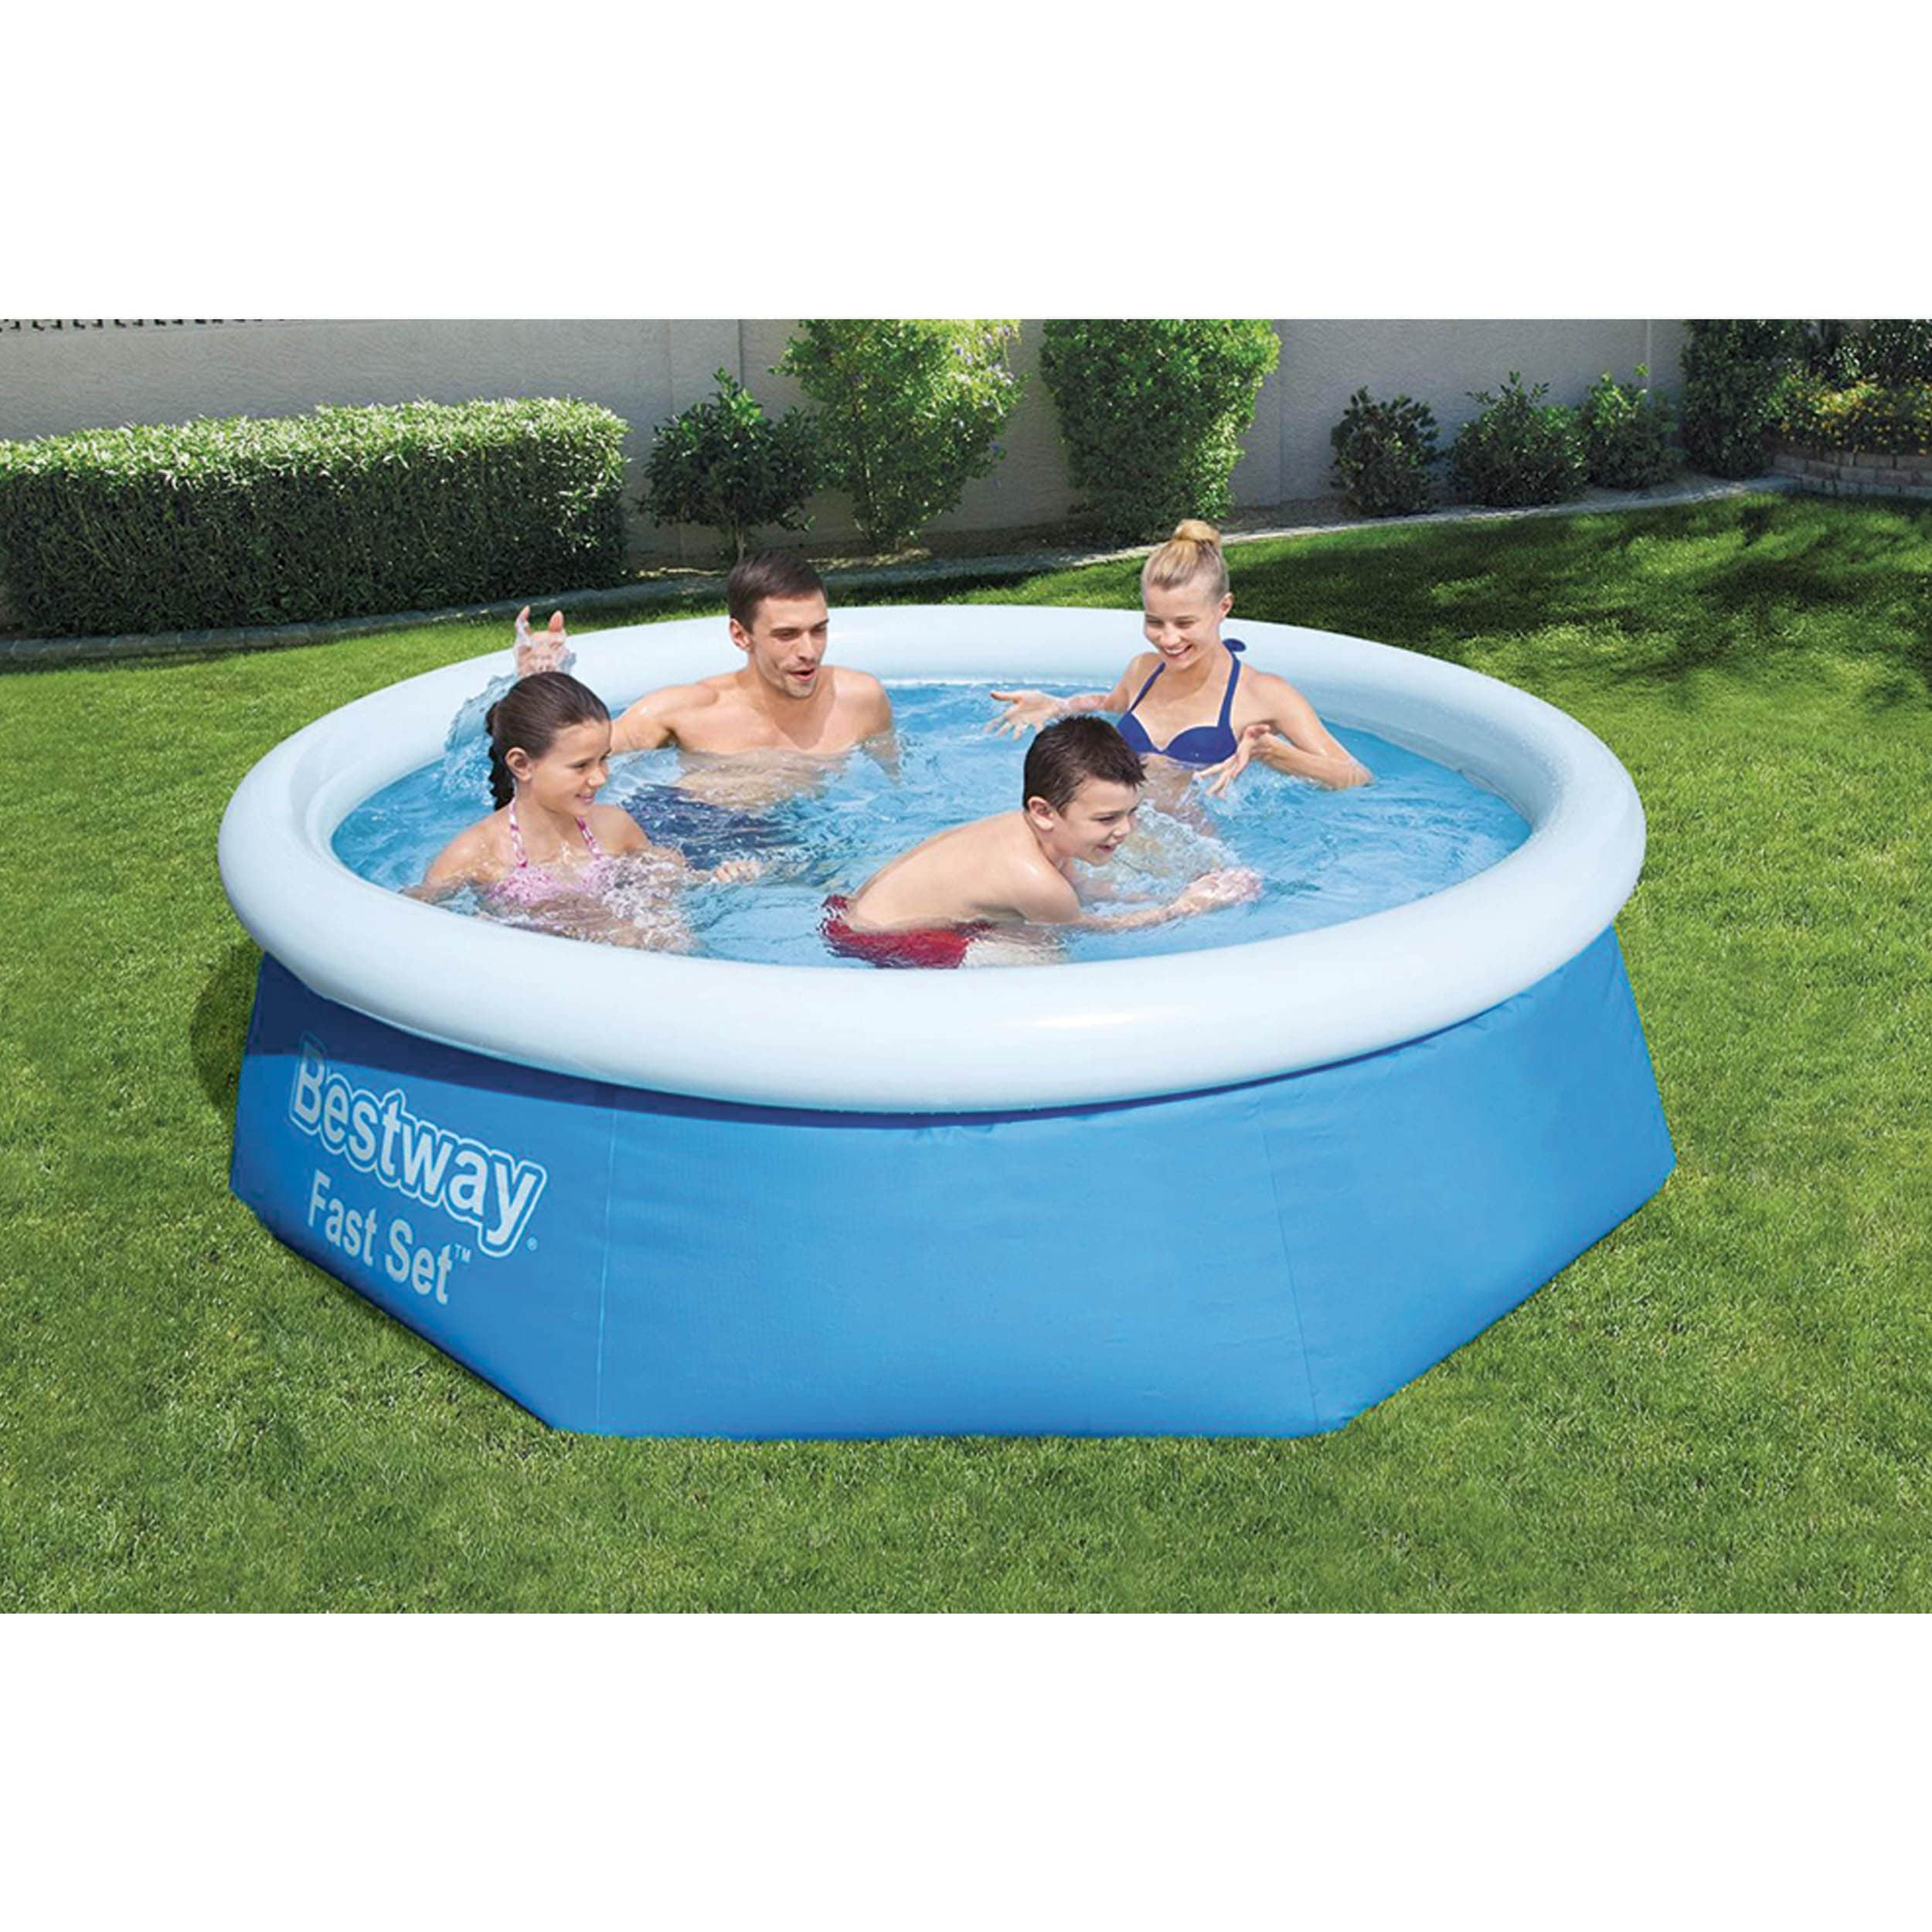 Eine Familie hat Badespaß in einem großen Pool